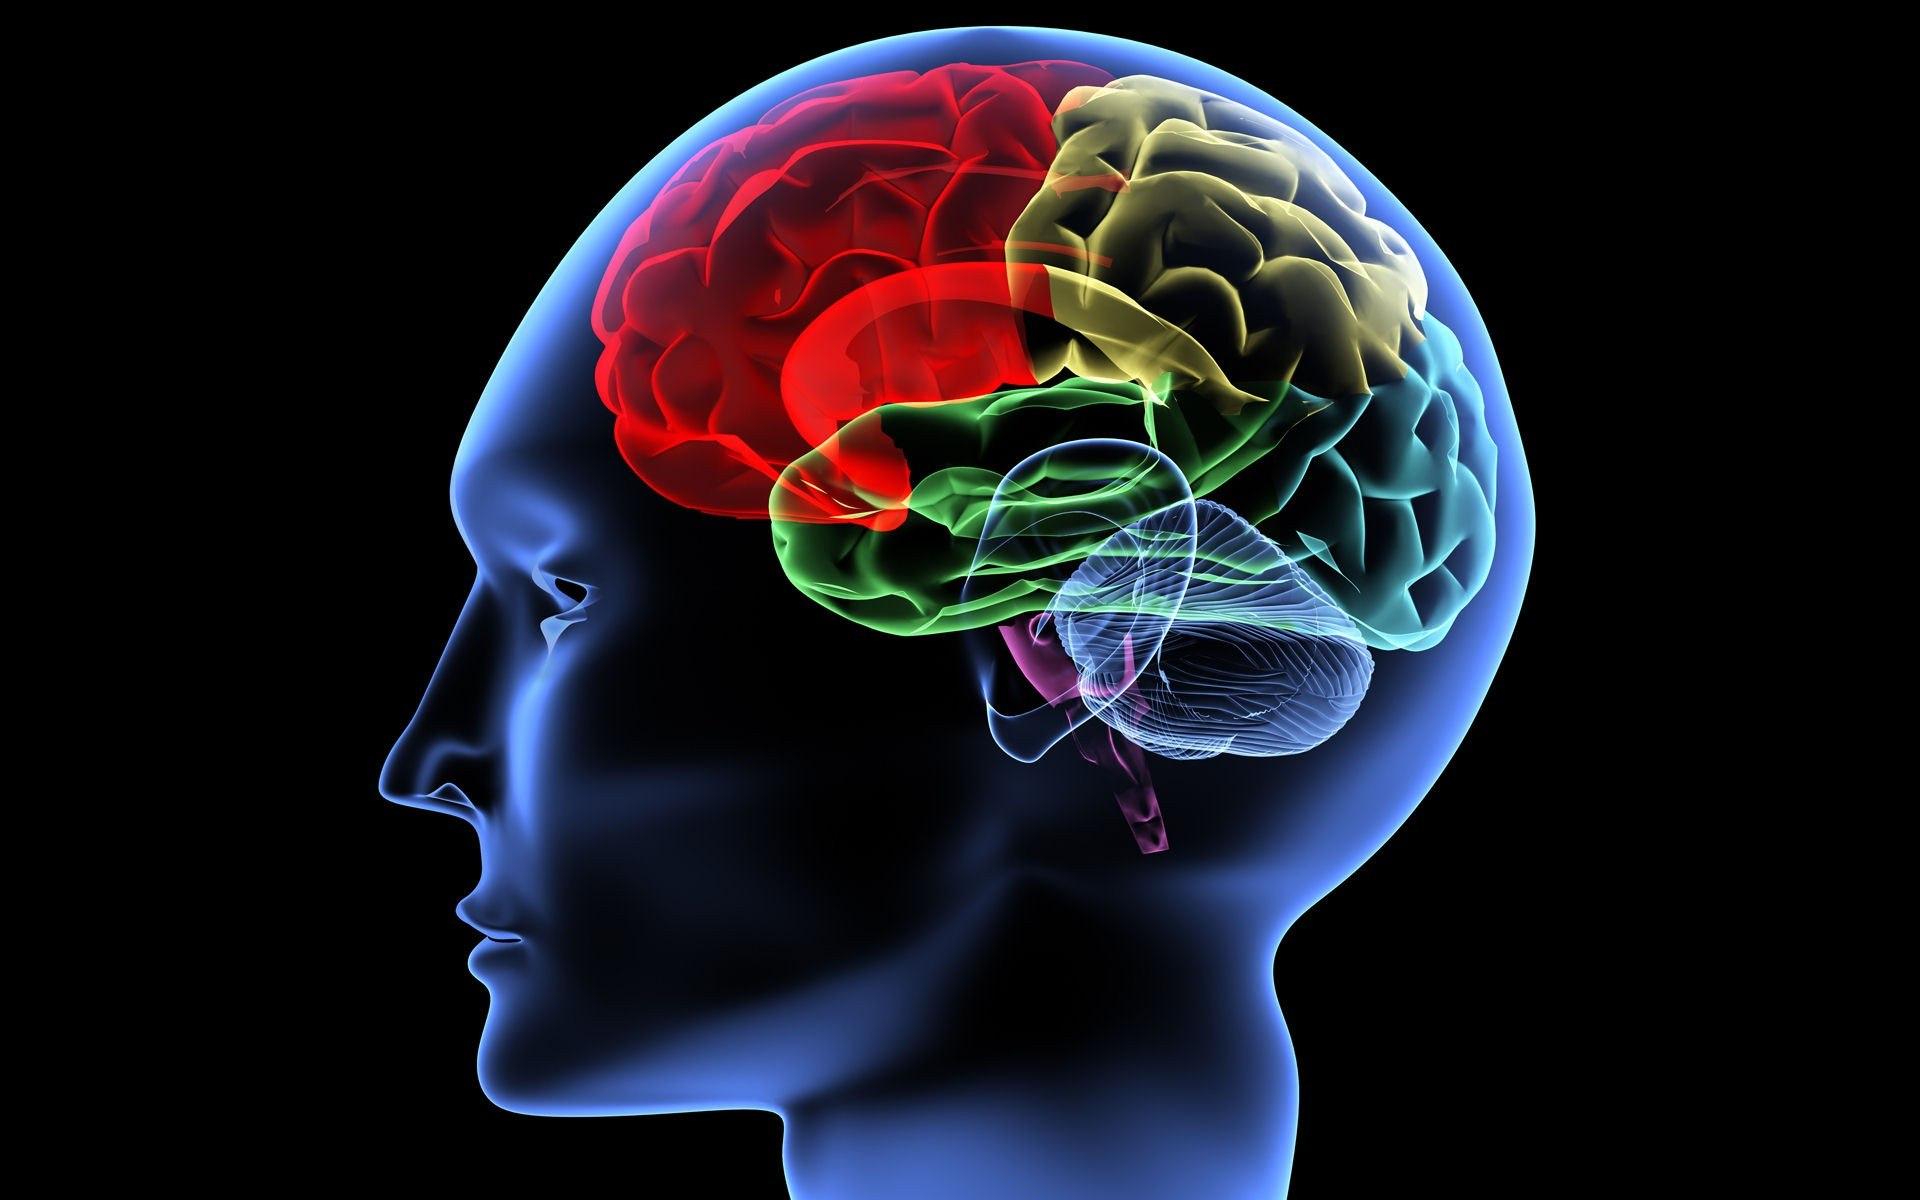 Психофизиологическое восприятие. Изображение мозга человека. Мозг картинка. Развитый головной мозг.